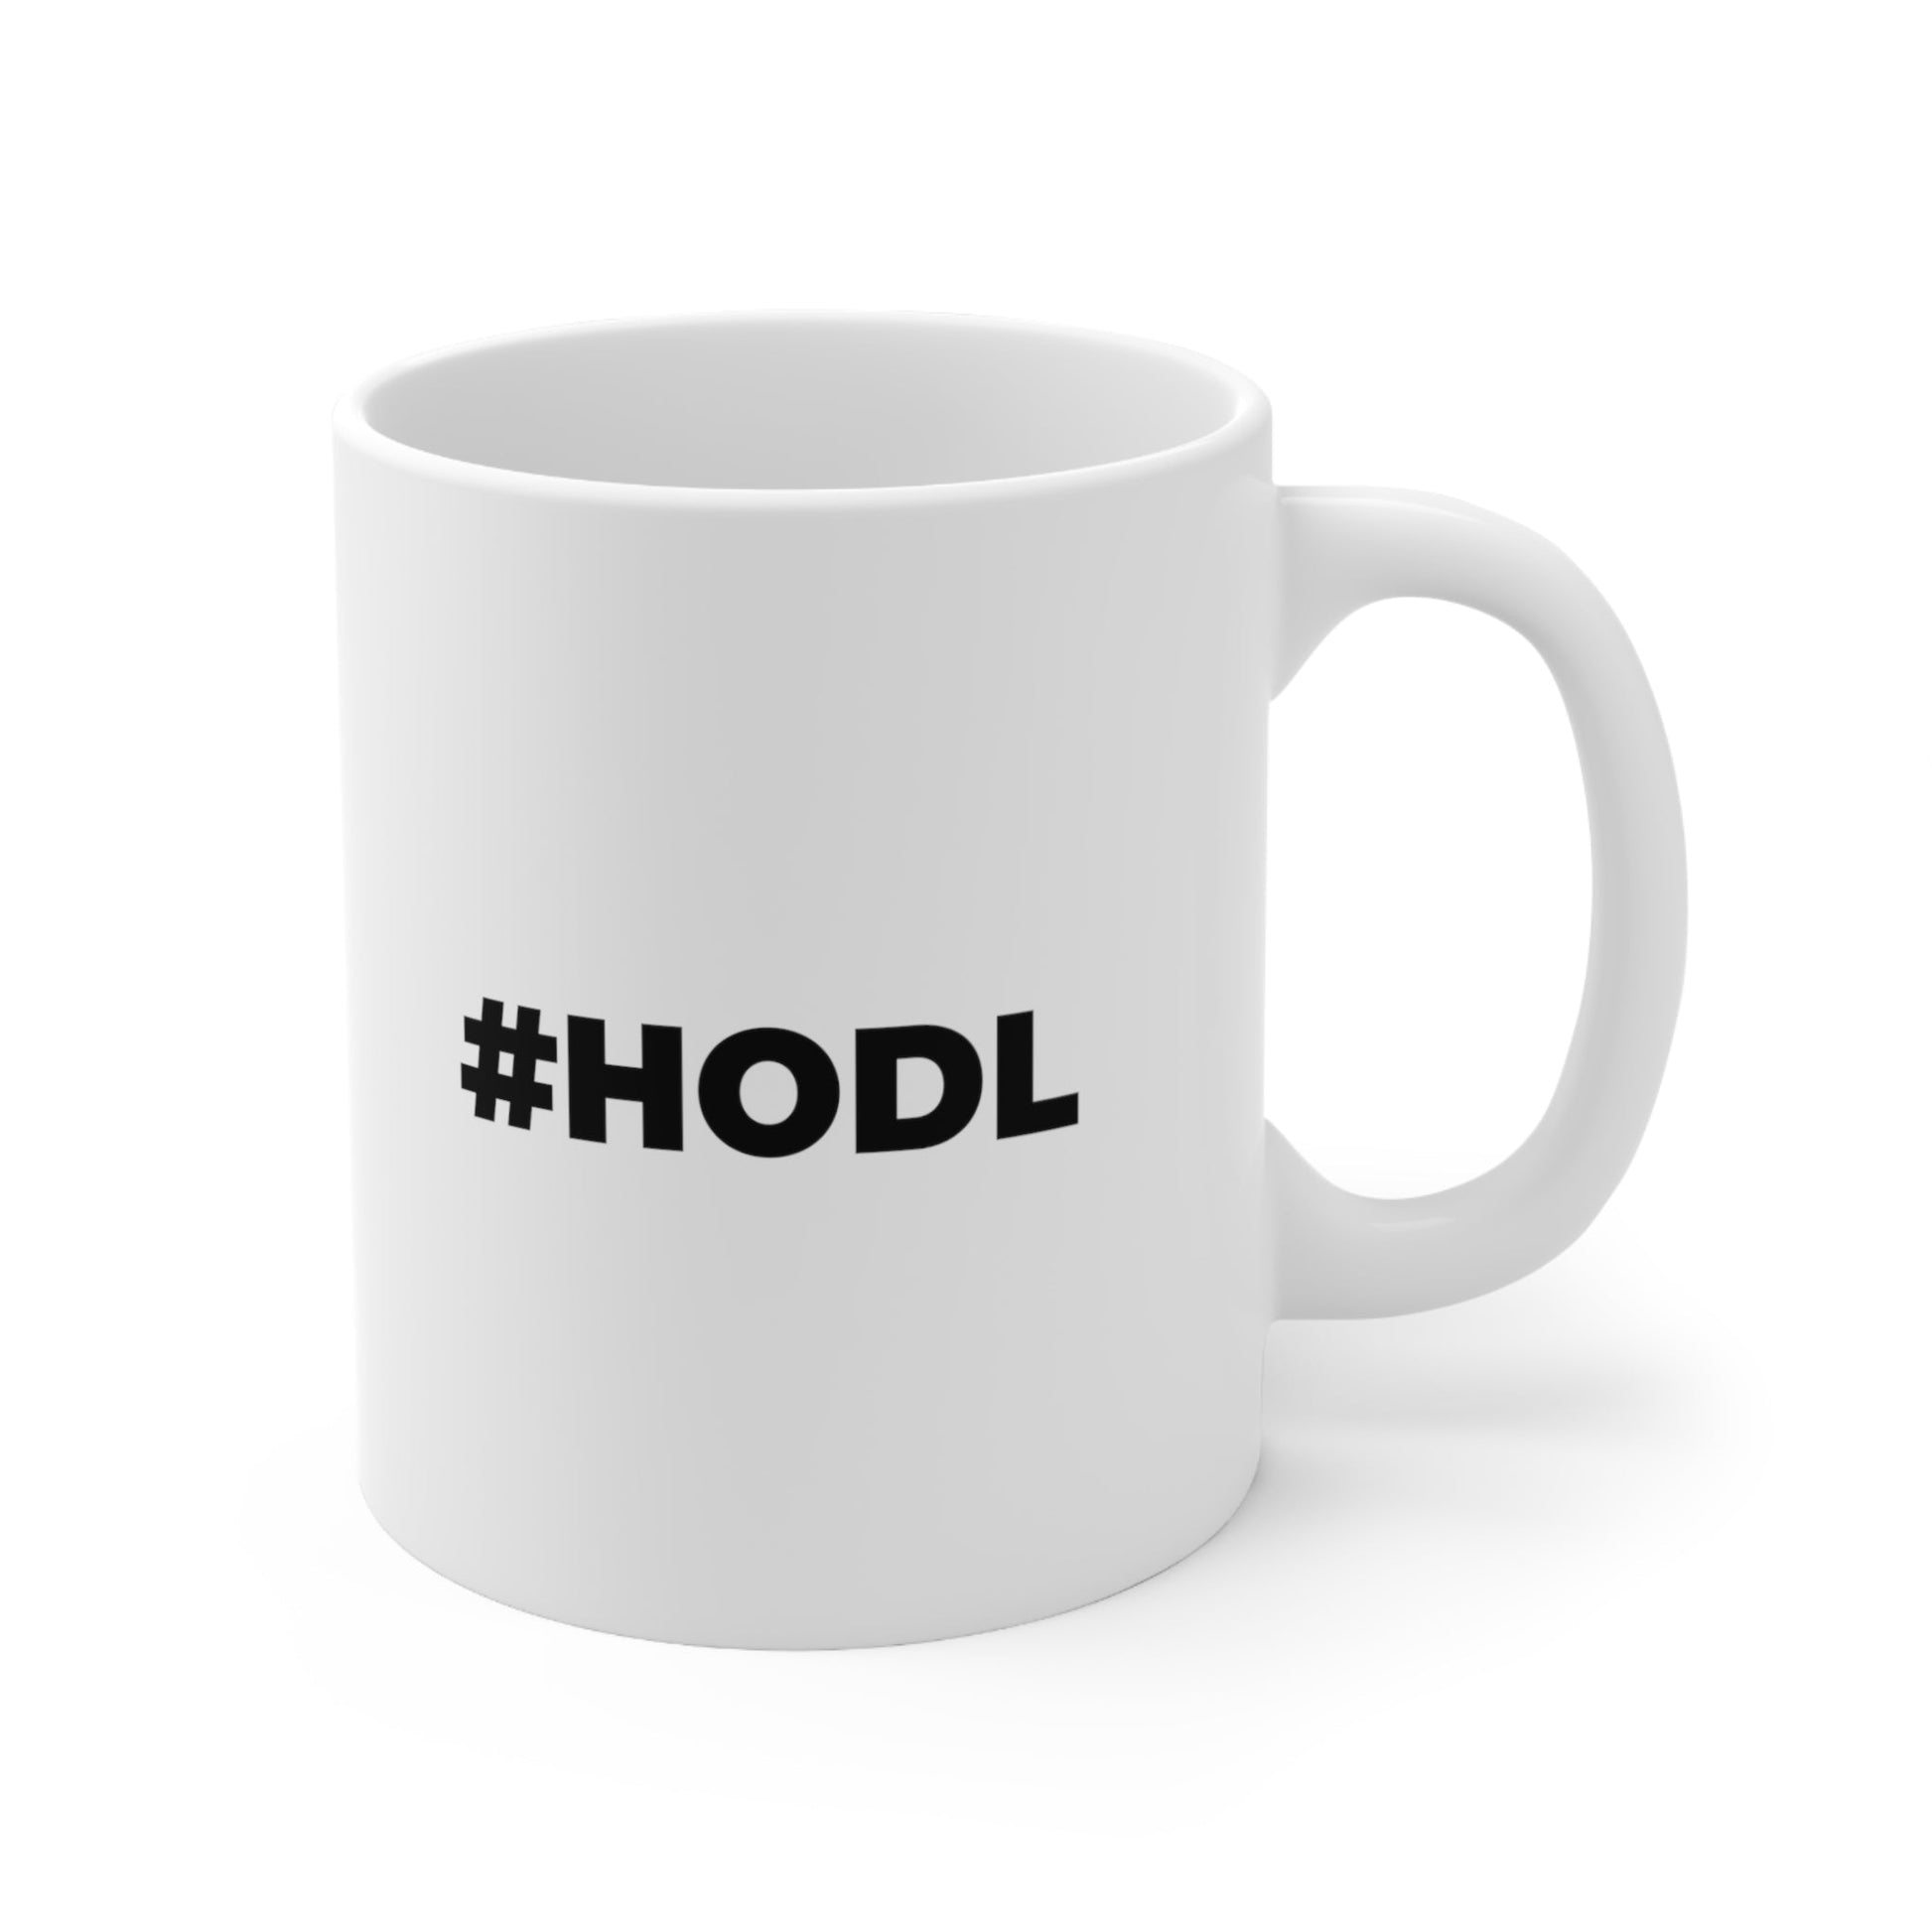 Hashtag HODL Mug Coffee 11oz Jolly Mugs